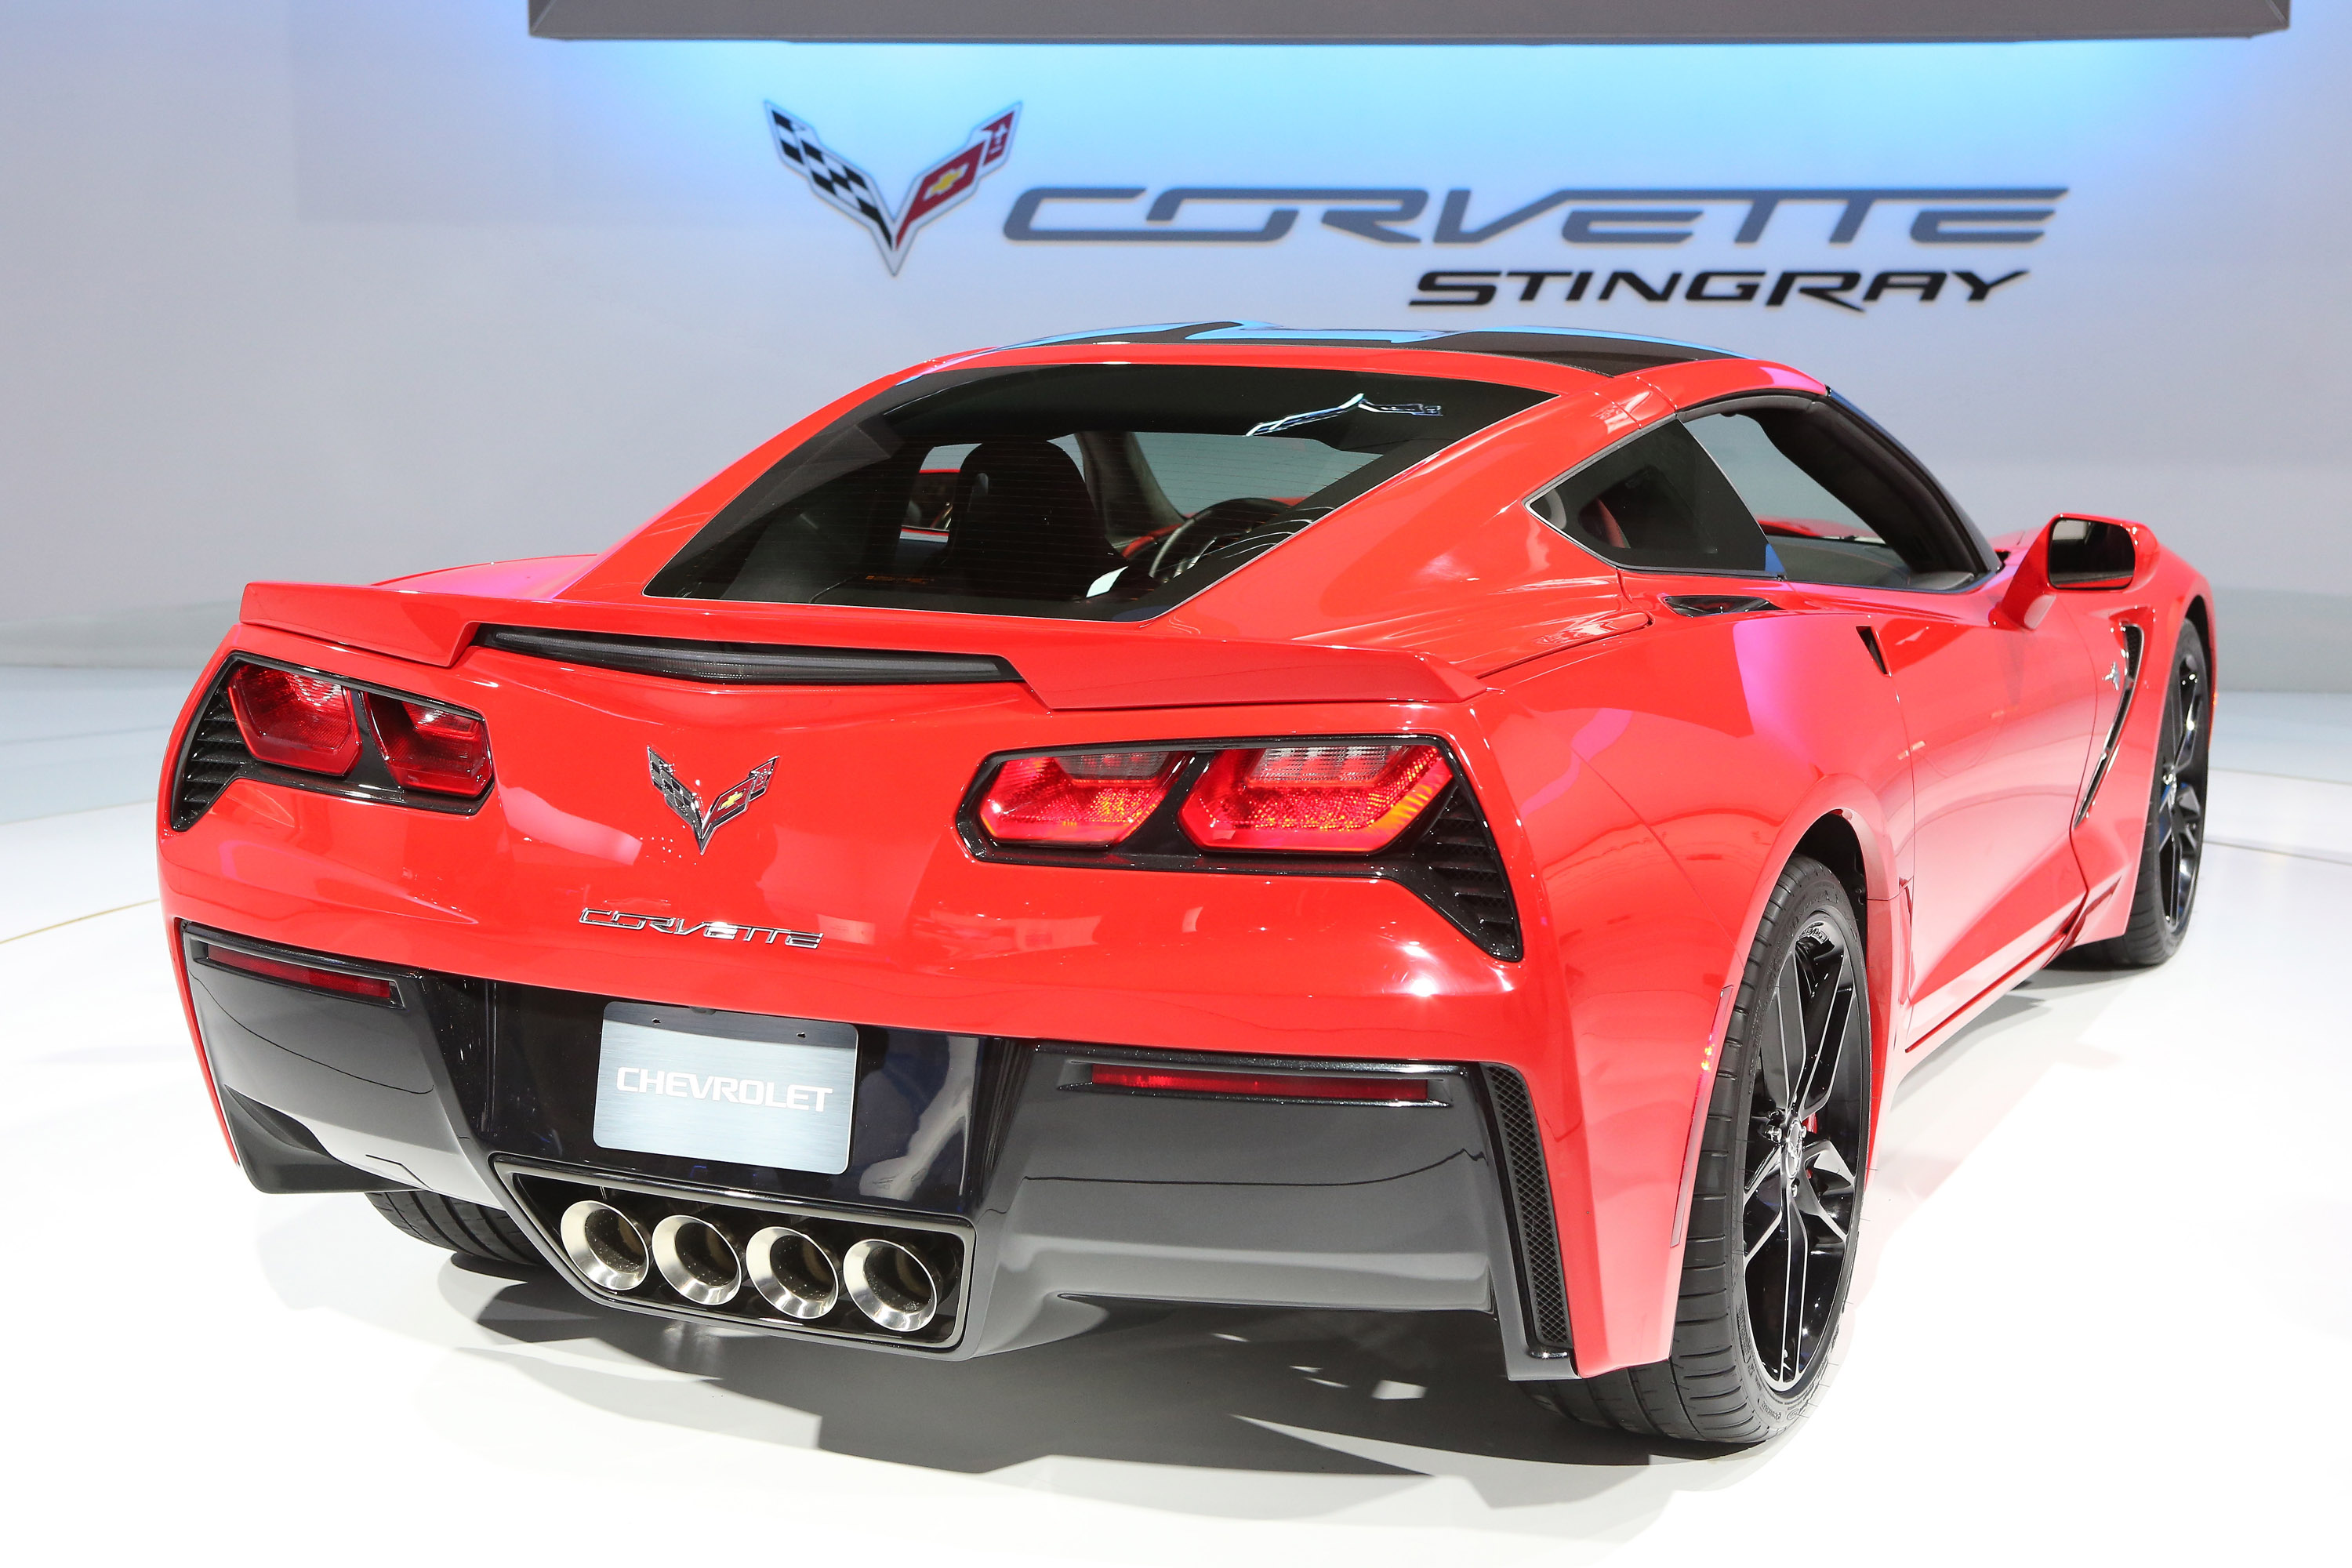 2013, Chevrolet, Corvette, Stingray, Supercar Wallpaper